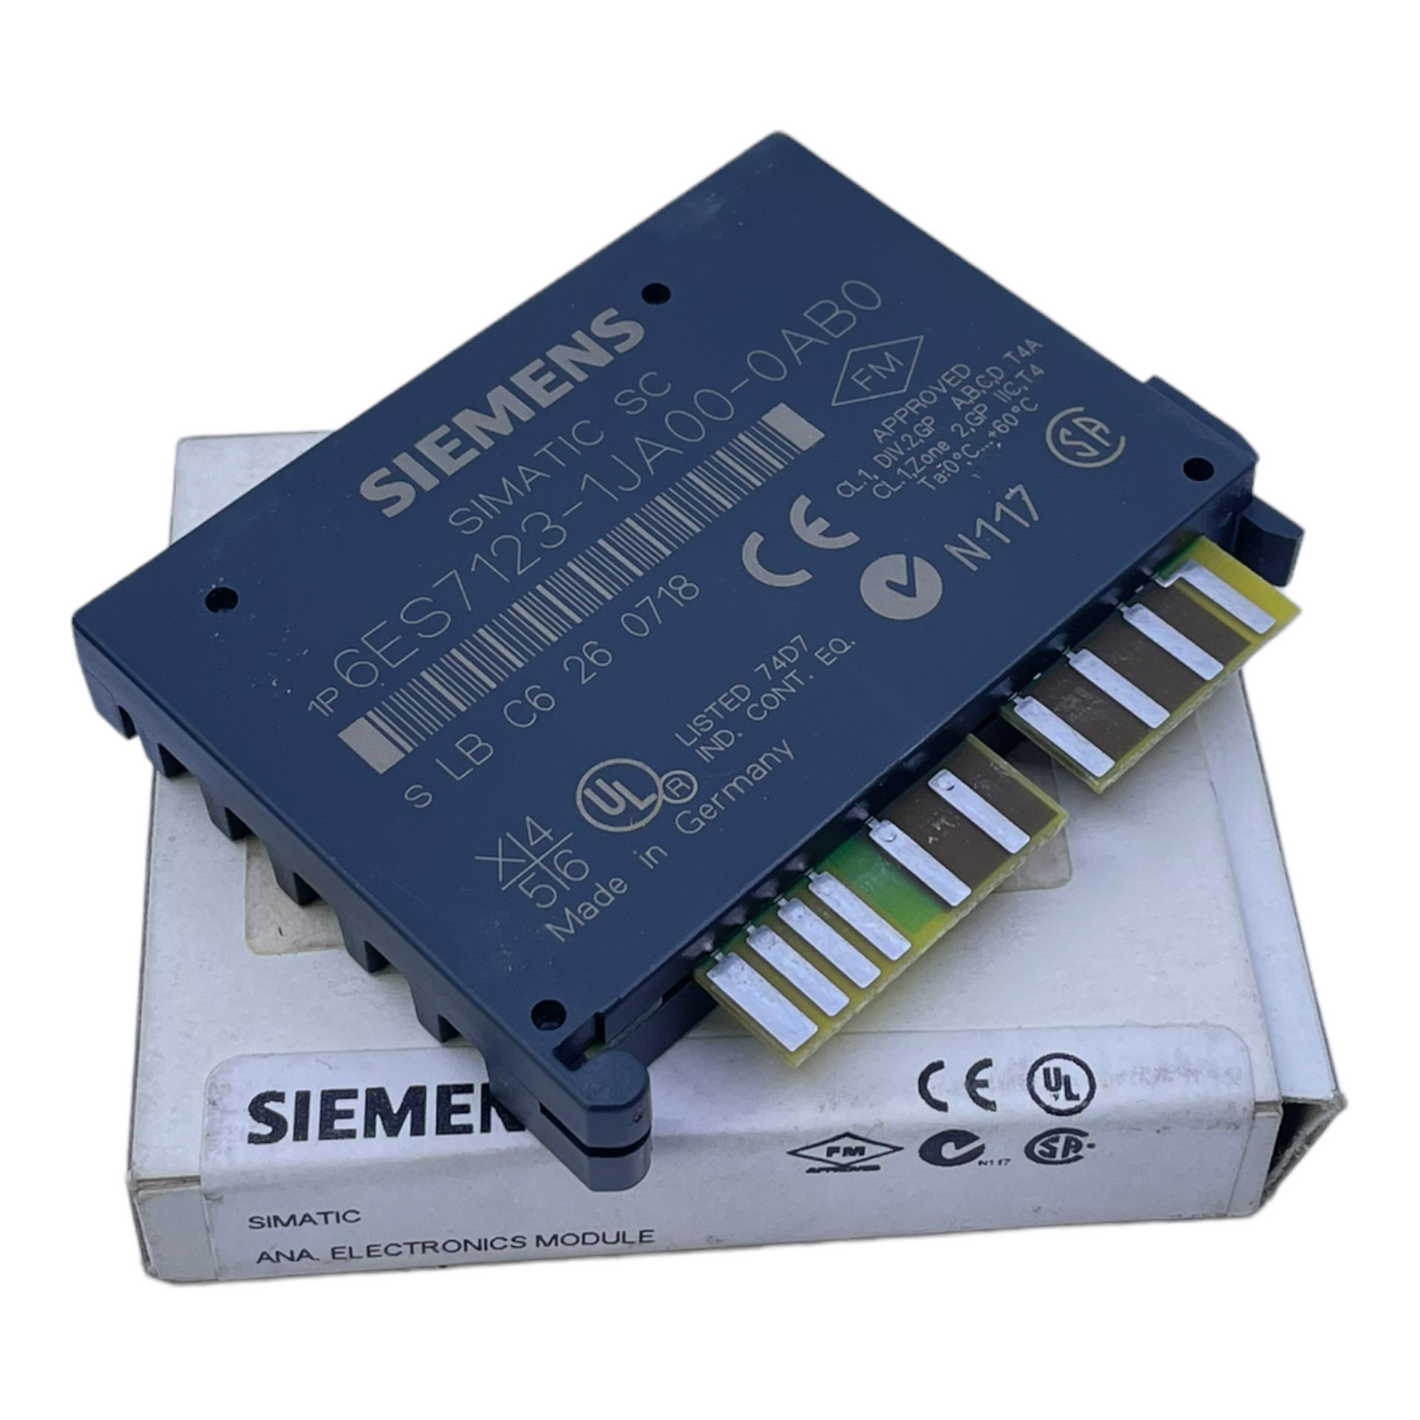 Siemens 6ES7123-1JA00-0AB0 Electronic module for industrial use Siemens 